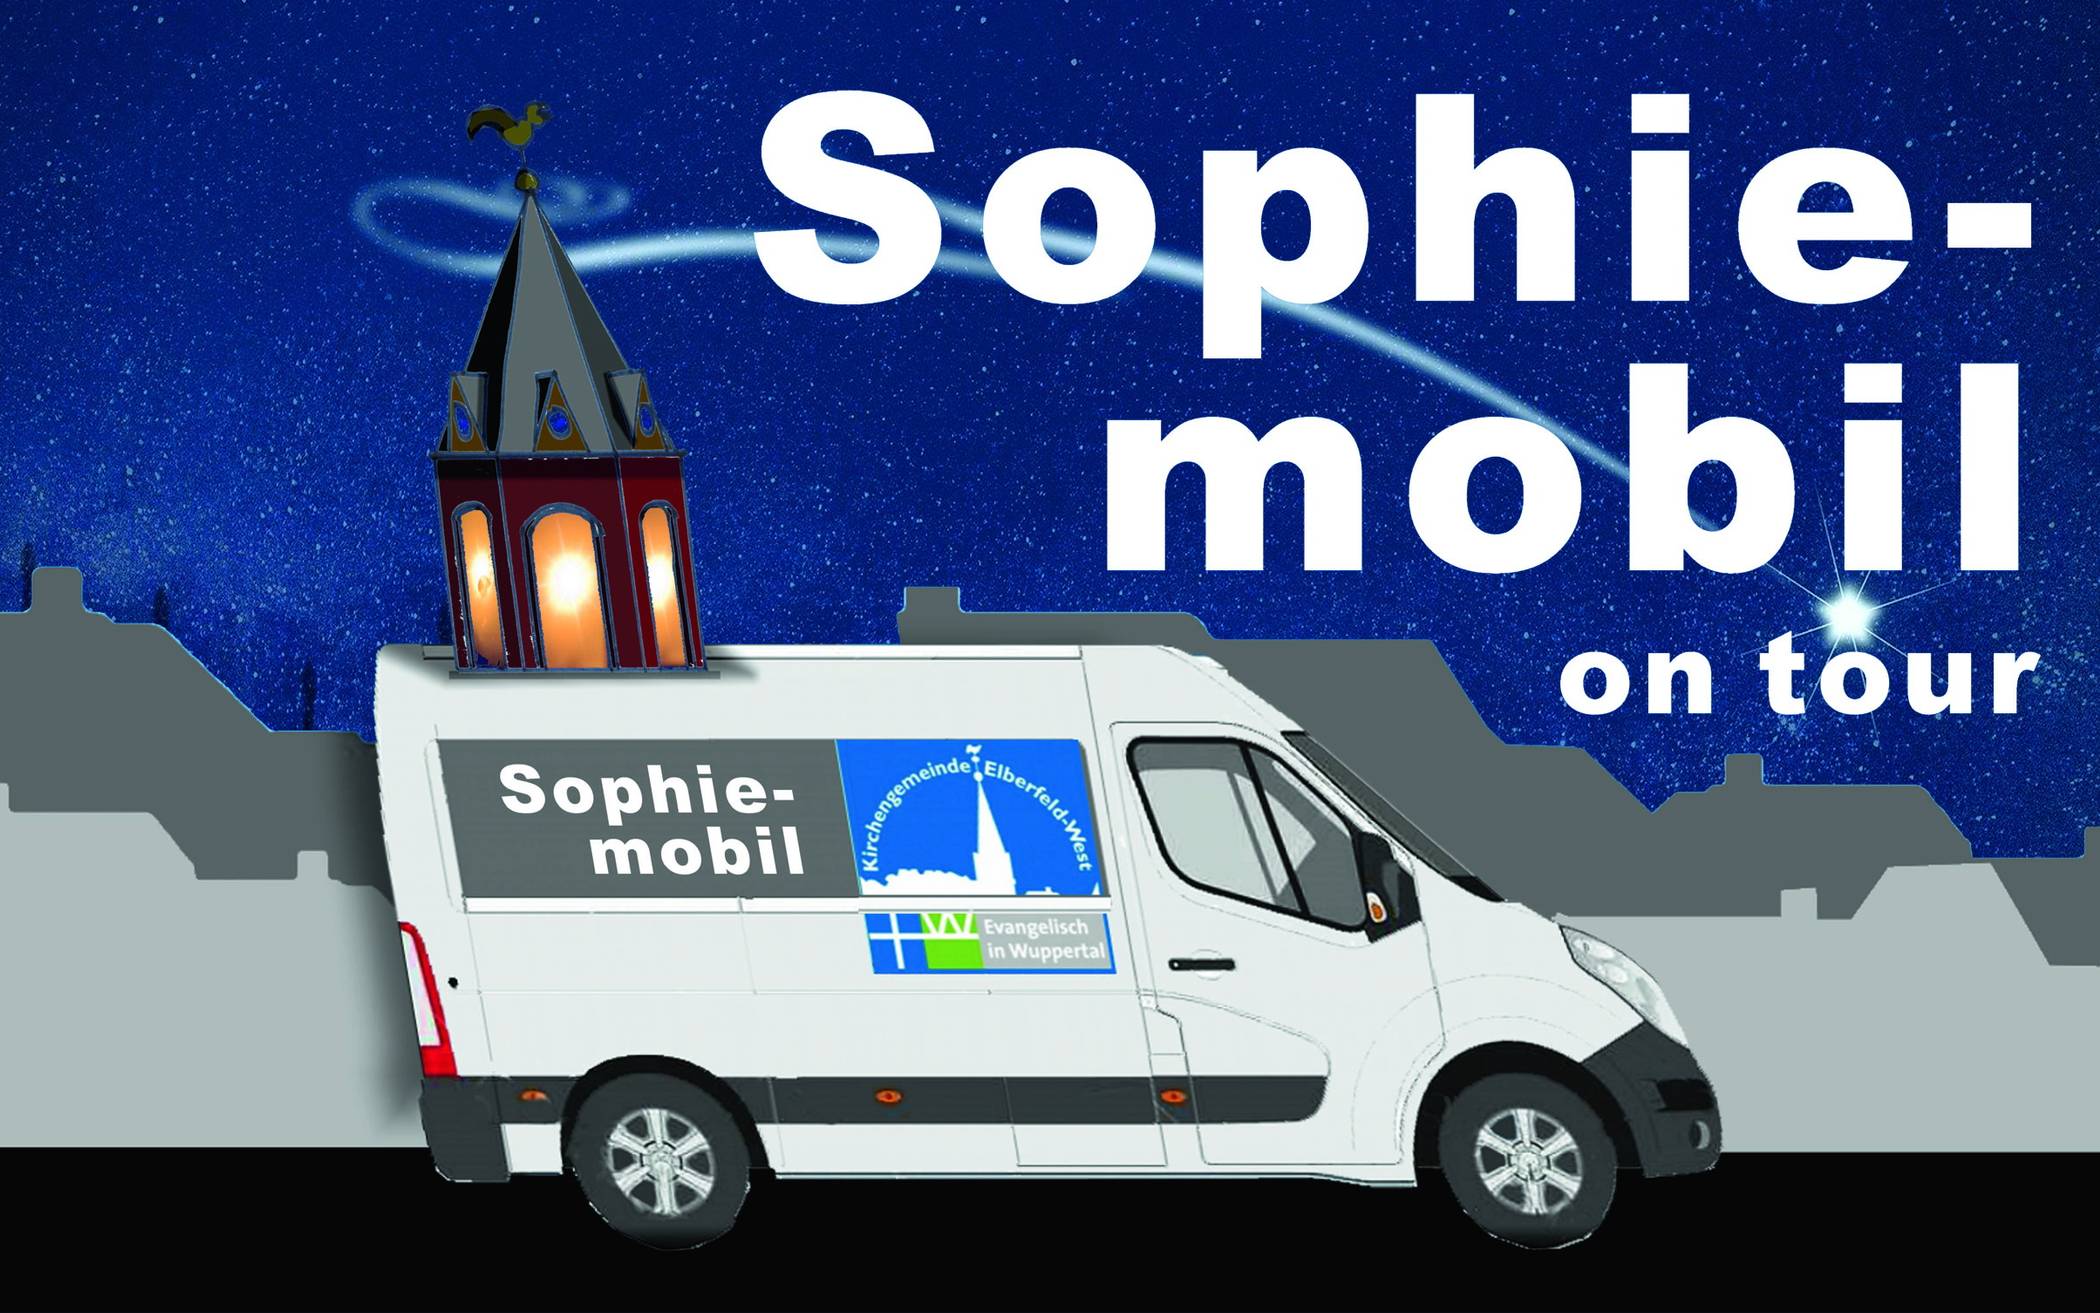 Das „Sophie-mobil“ startet durch.